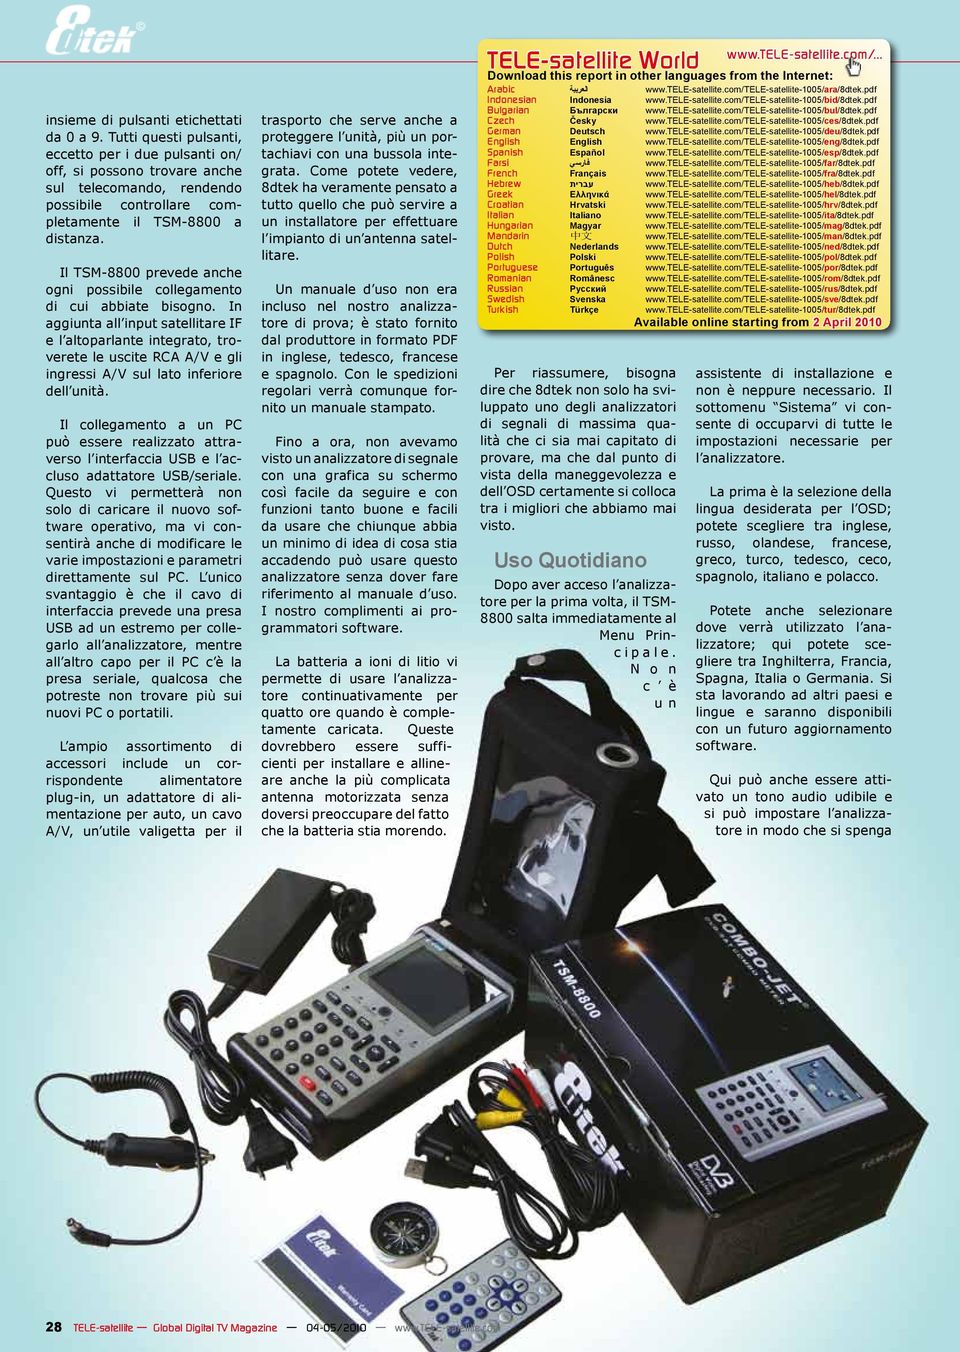 Il TSM-8800 prevede anche ogni possibile collegamento di cui abbiate bisogno.